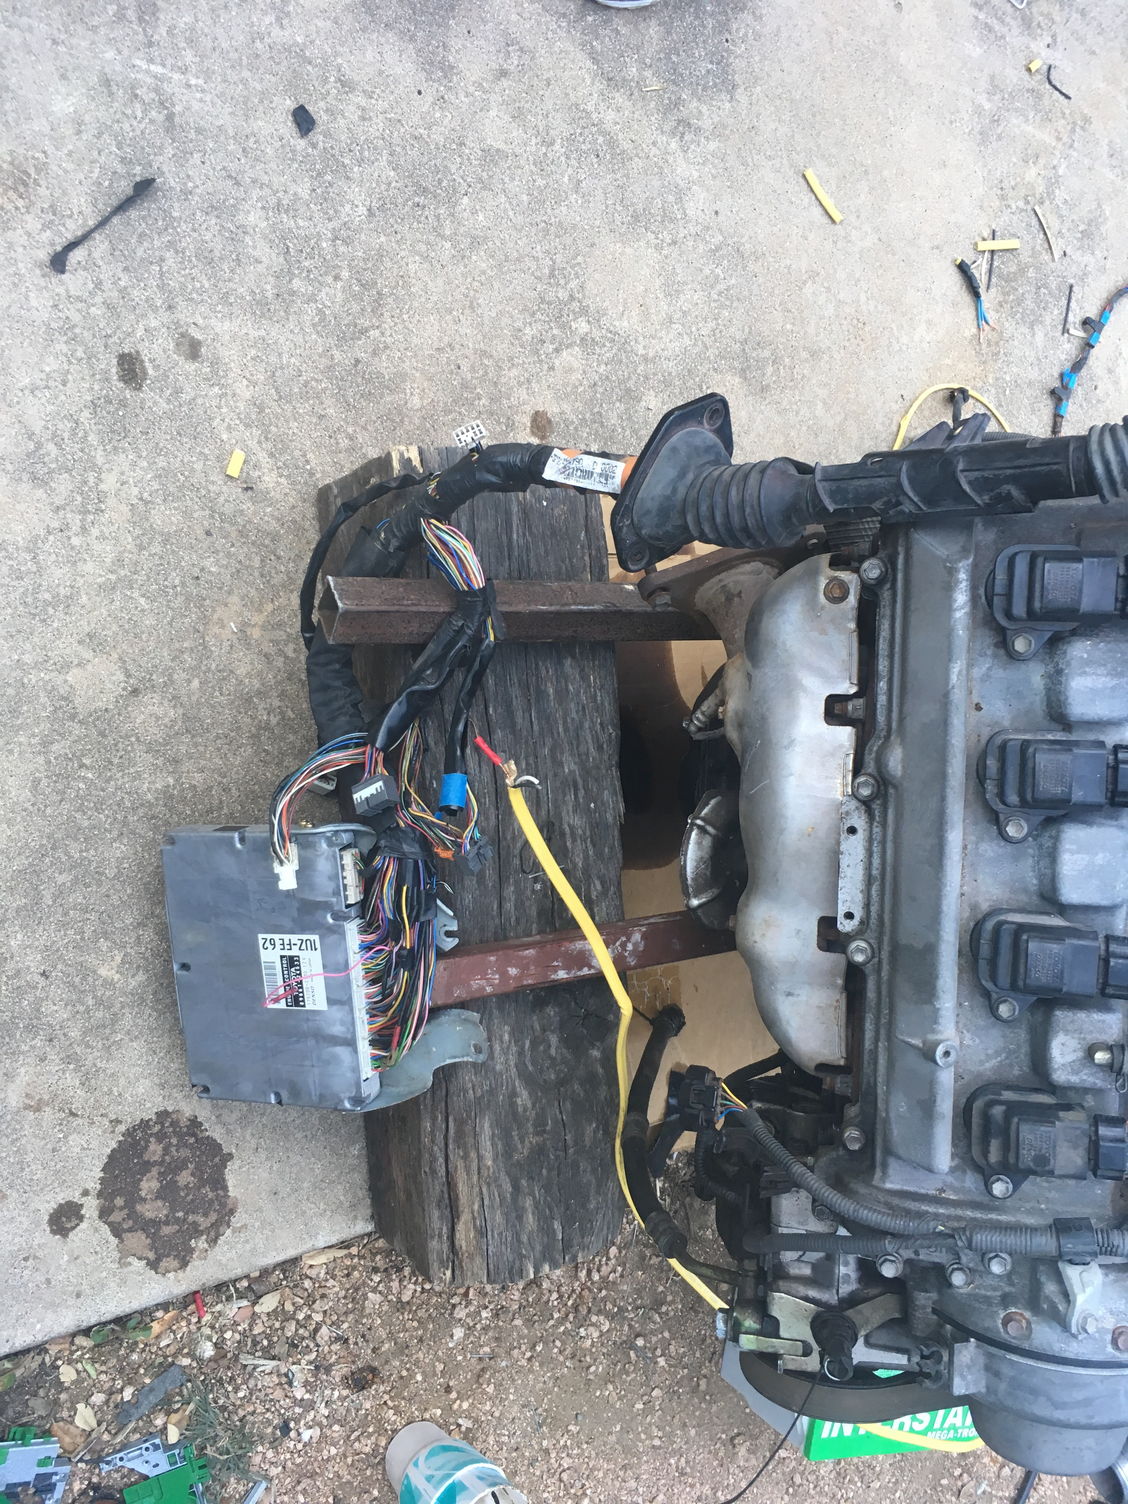 HELP NEEDED - 1uzfe vvti - probably wiring problem | Lexus-Toyota V8